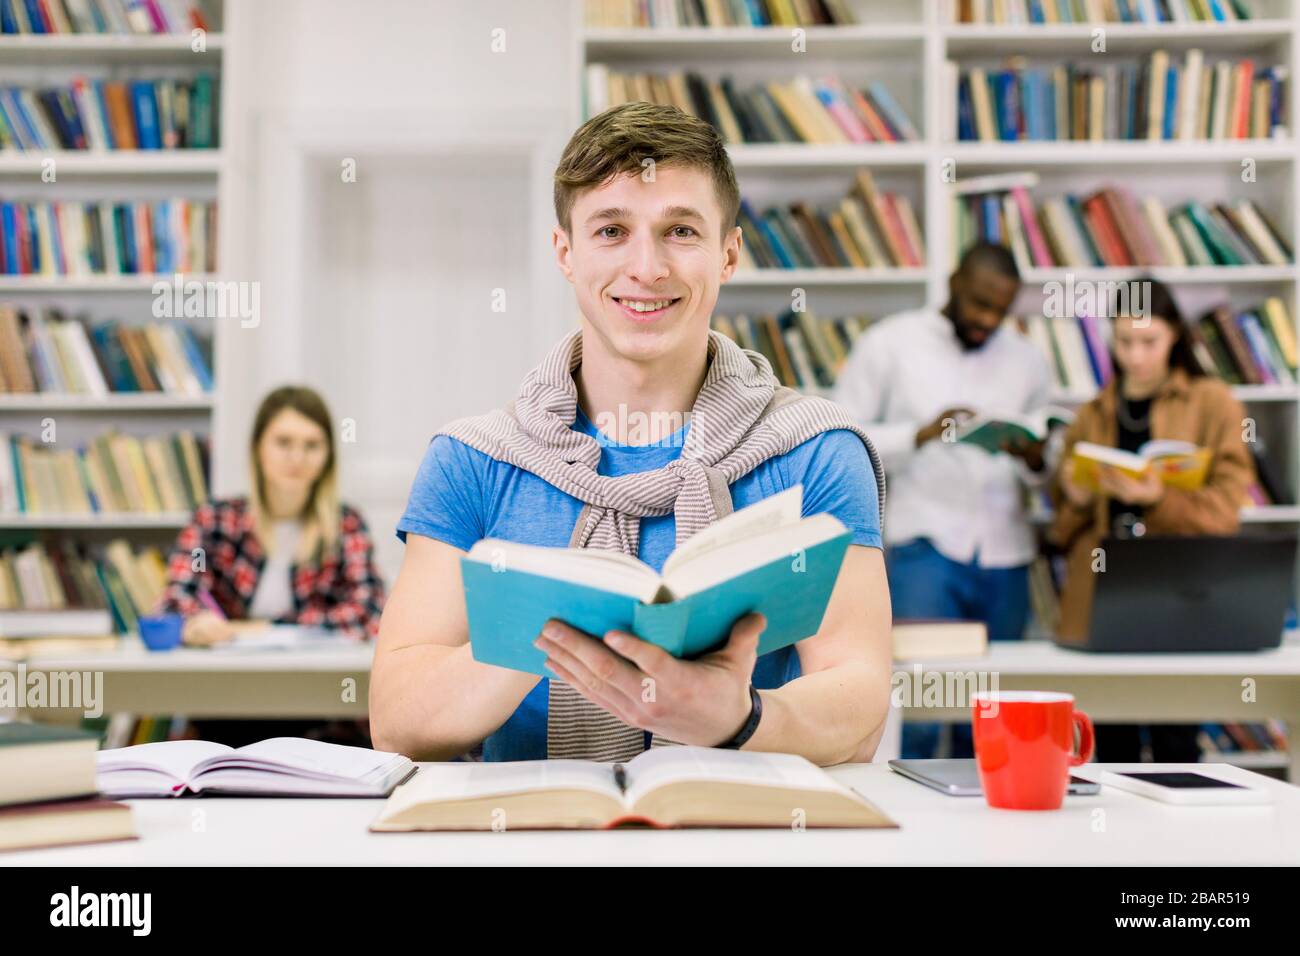 Junge lächelnde Hippie-Studentin, die in der Bibliothek an der Universität studiert. Student schaut mit seiner Kamera und lächelt, genießt es, während er mit seiner in der Bibliothek studiert Stockfoto